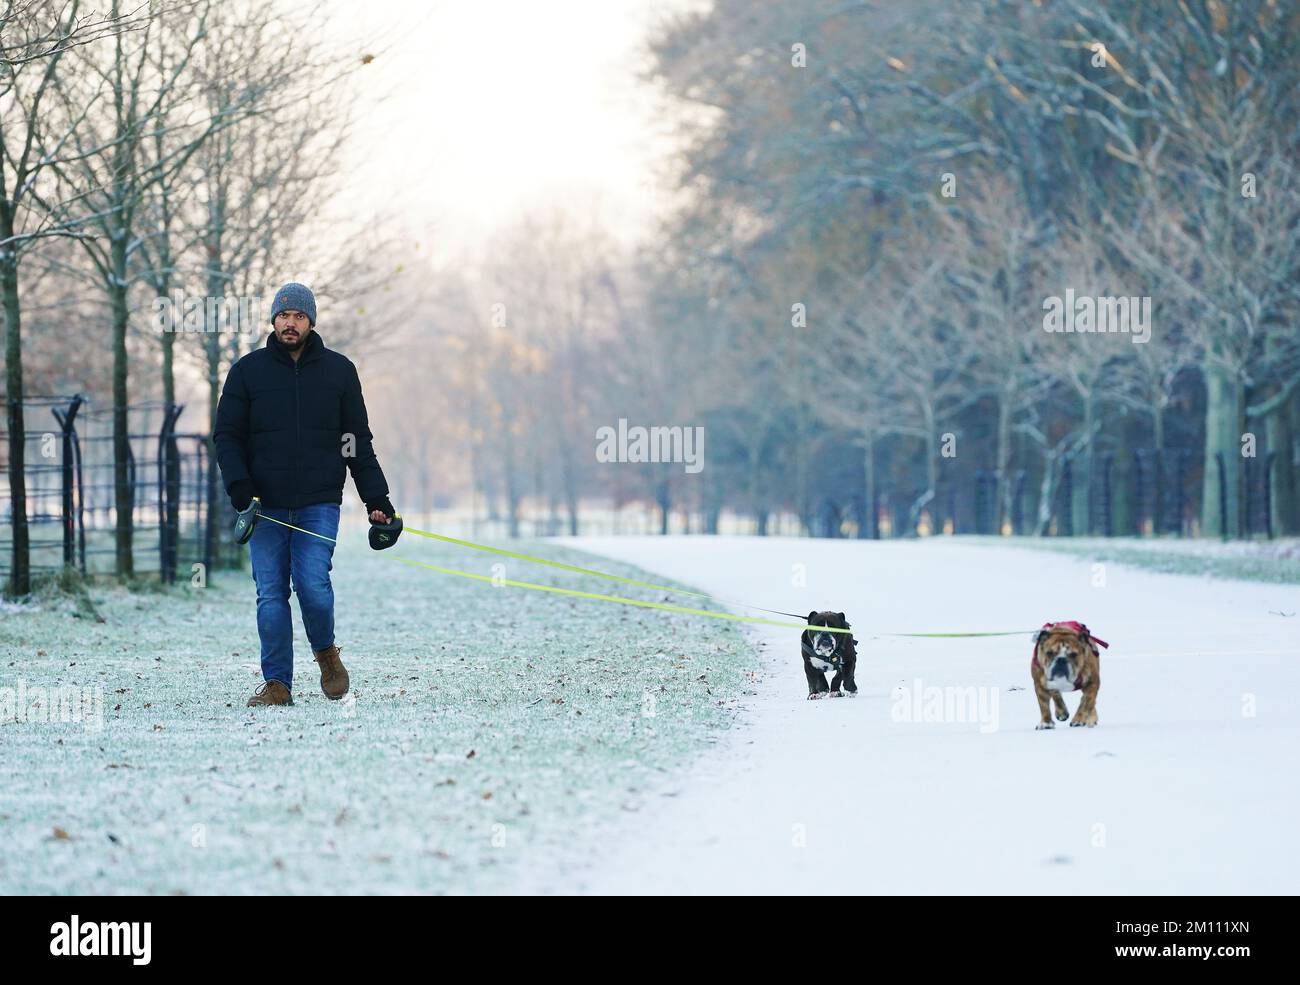 Ein Mann geht mit seinen britischen Bulldoggen in einem schneebedeckten Phoenix Park in Dublin spazieren. Teile Irlands wurden mit Schnee überdeckt, und die Wetterbeobachter warnten, dass die Frostbedingungen anhalten werden. Foto: Freitag, 9. Dezember 2022. Stockfoto